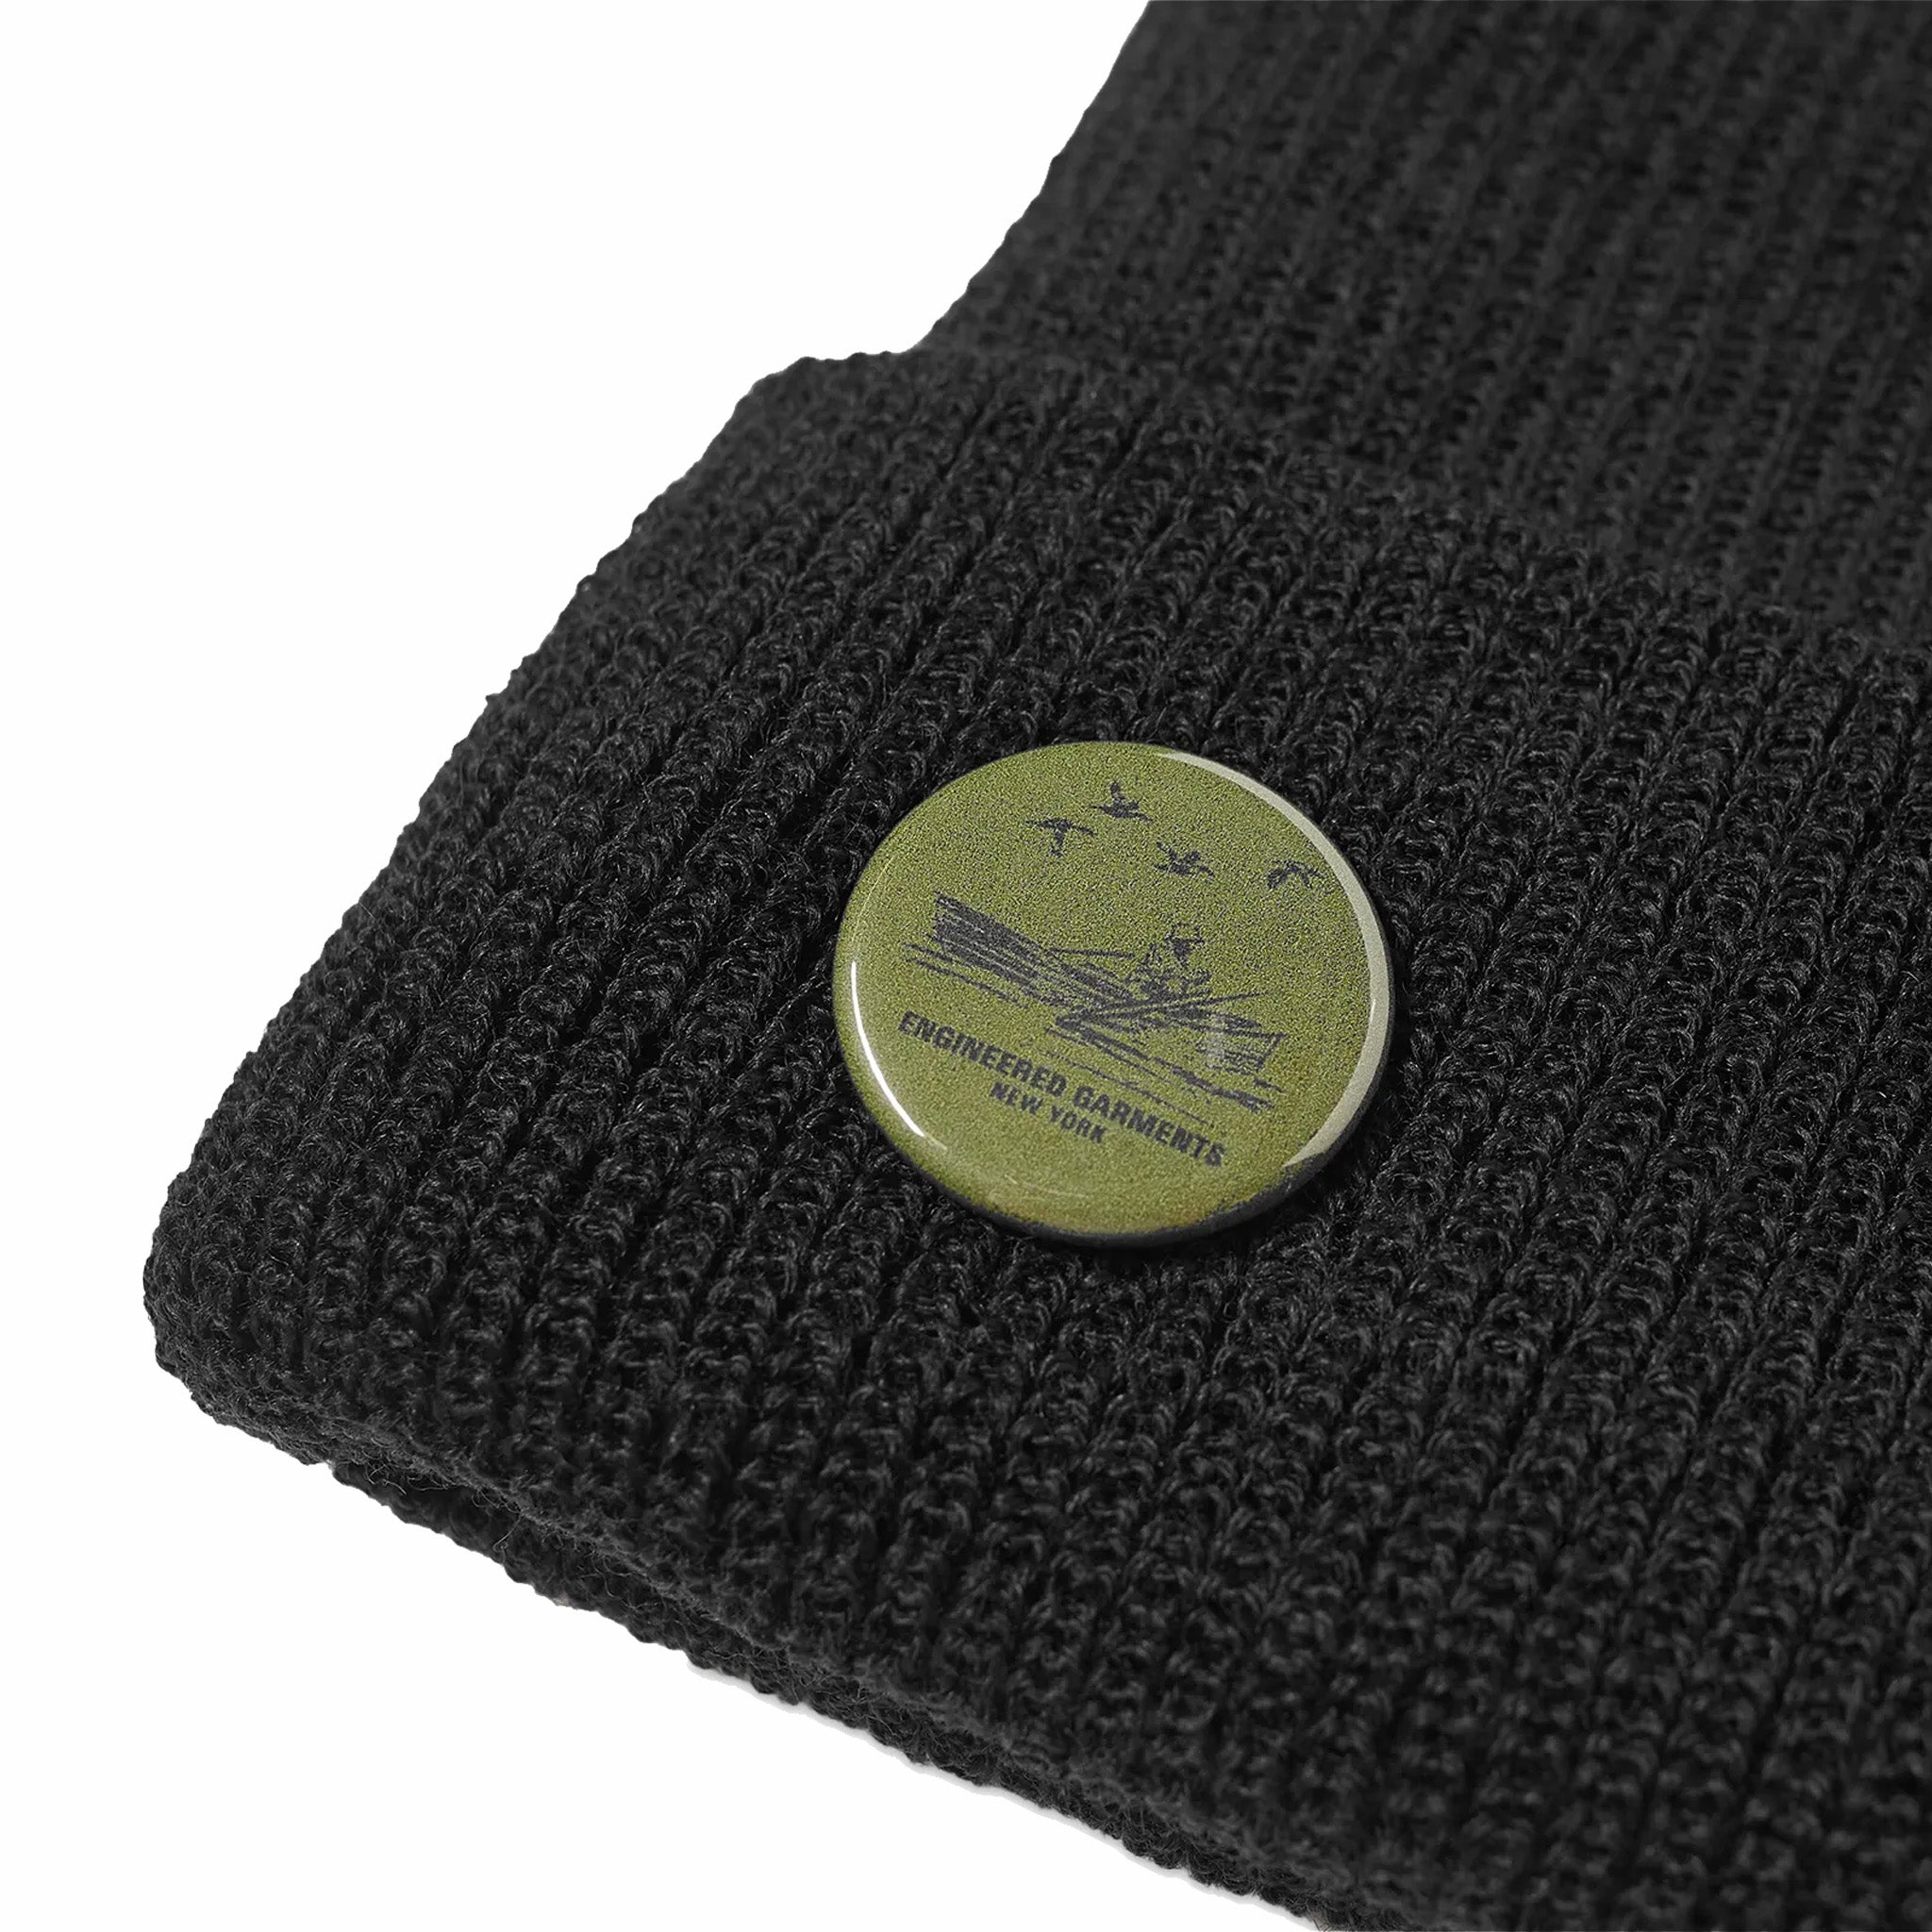 Indumenti ingegnerizzati, Engineered Garments - Berretto con orologio in lana (nero)